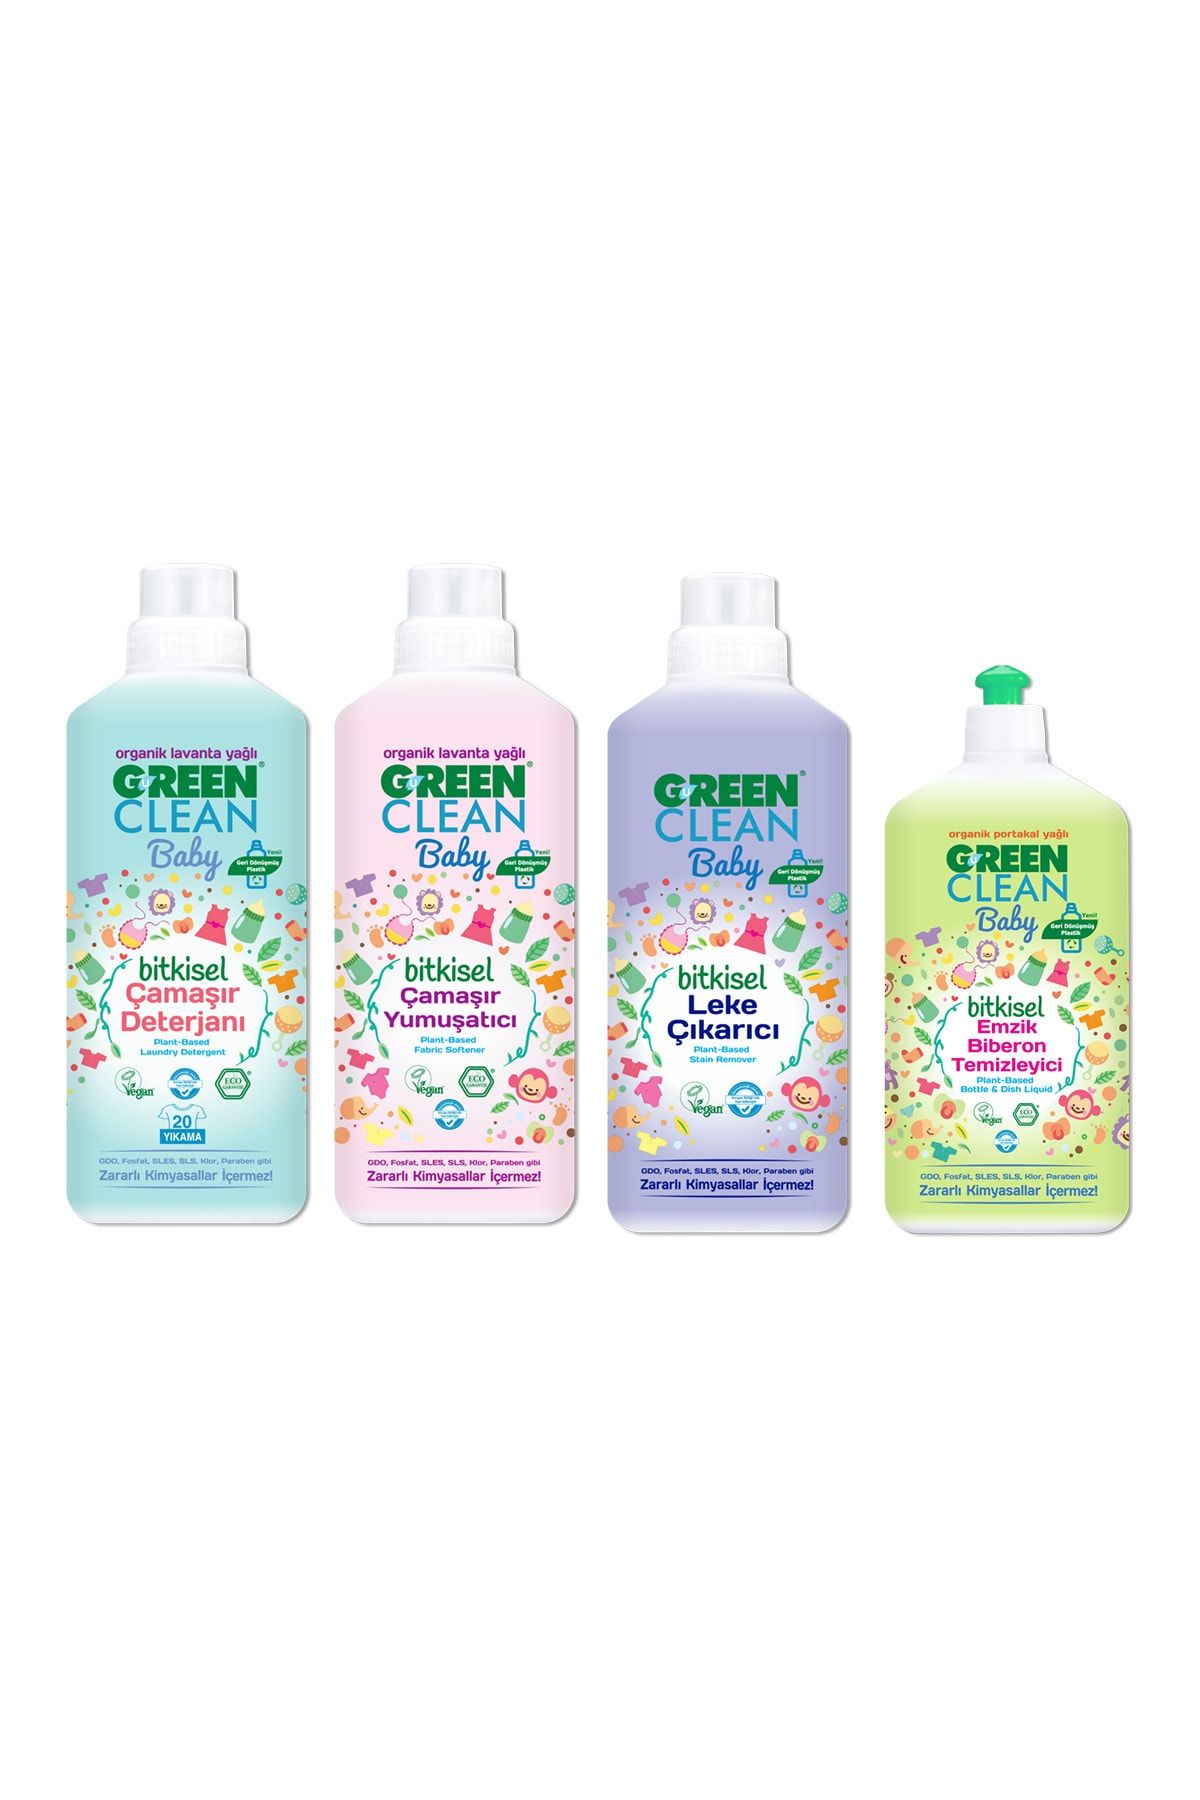 Green Clean Baby Organik Bitkisel Çamaşır Detarjanı + Yumuşatıcı + Leke Çıkarıcı + Emzik Biberon Temizleyici